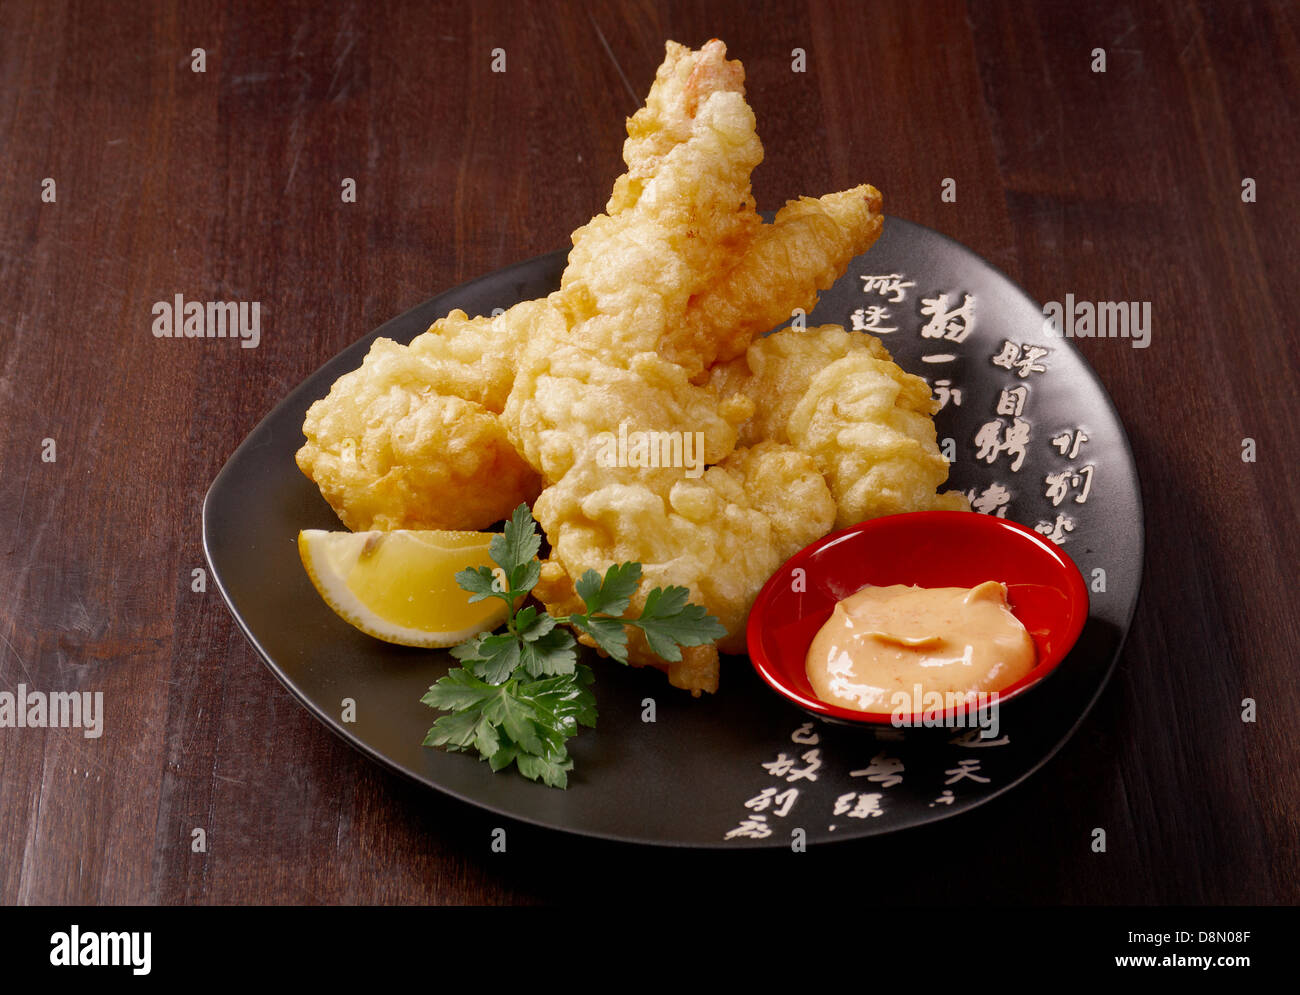 prawn Ebi tempura bowi Stock Photo - Alamy